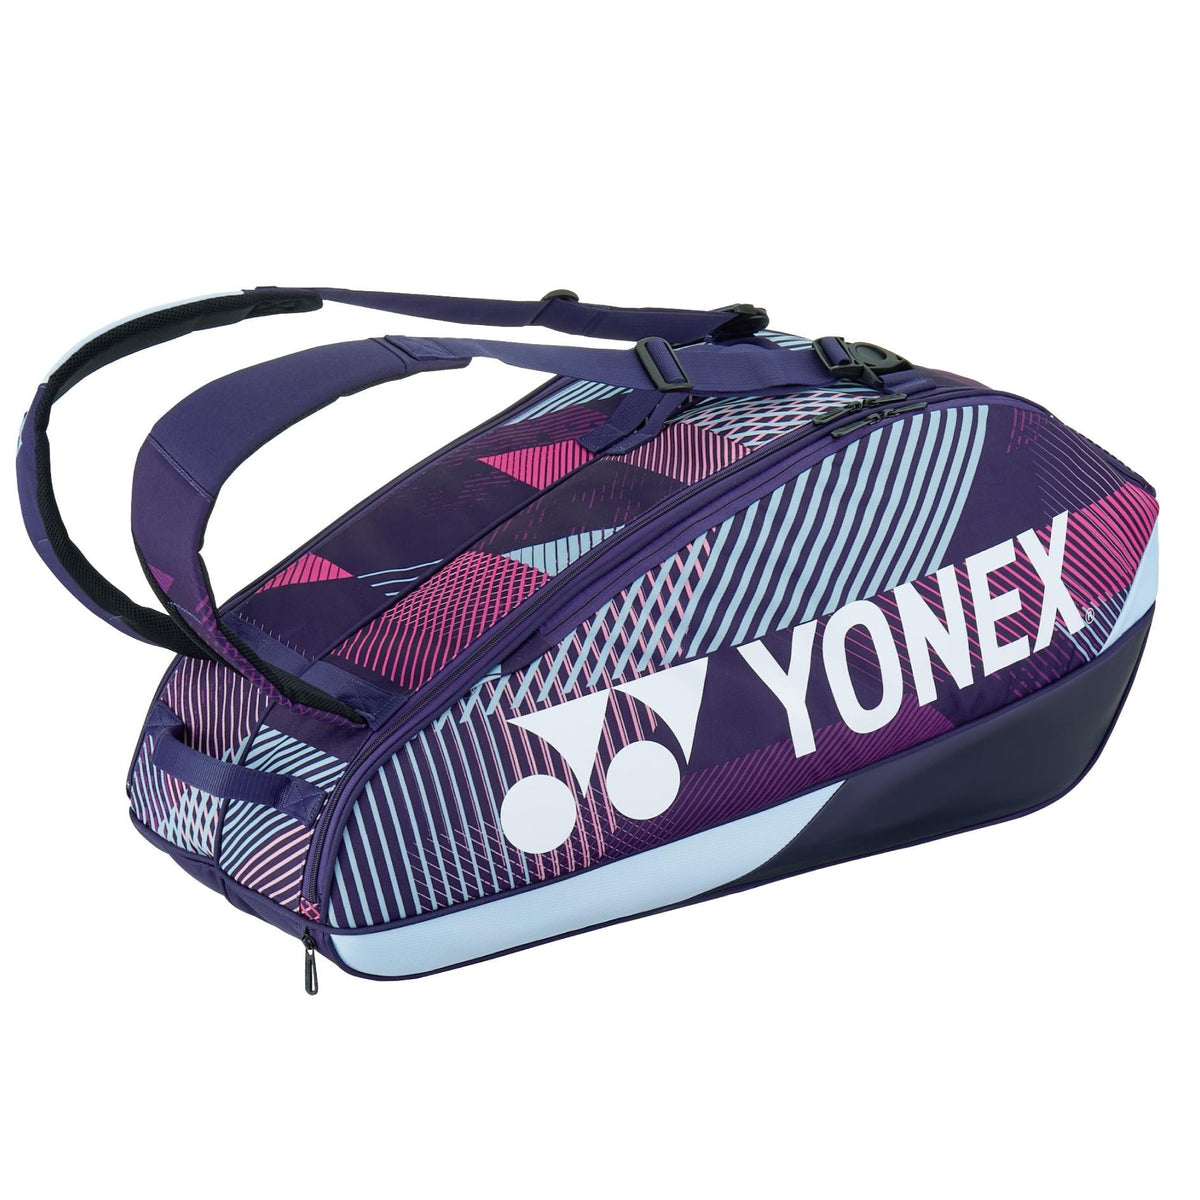 Yonex Racketbag 92426 grape